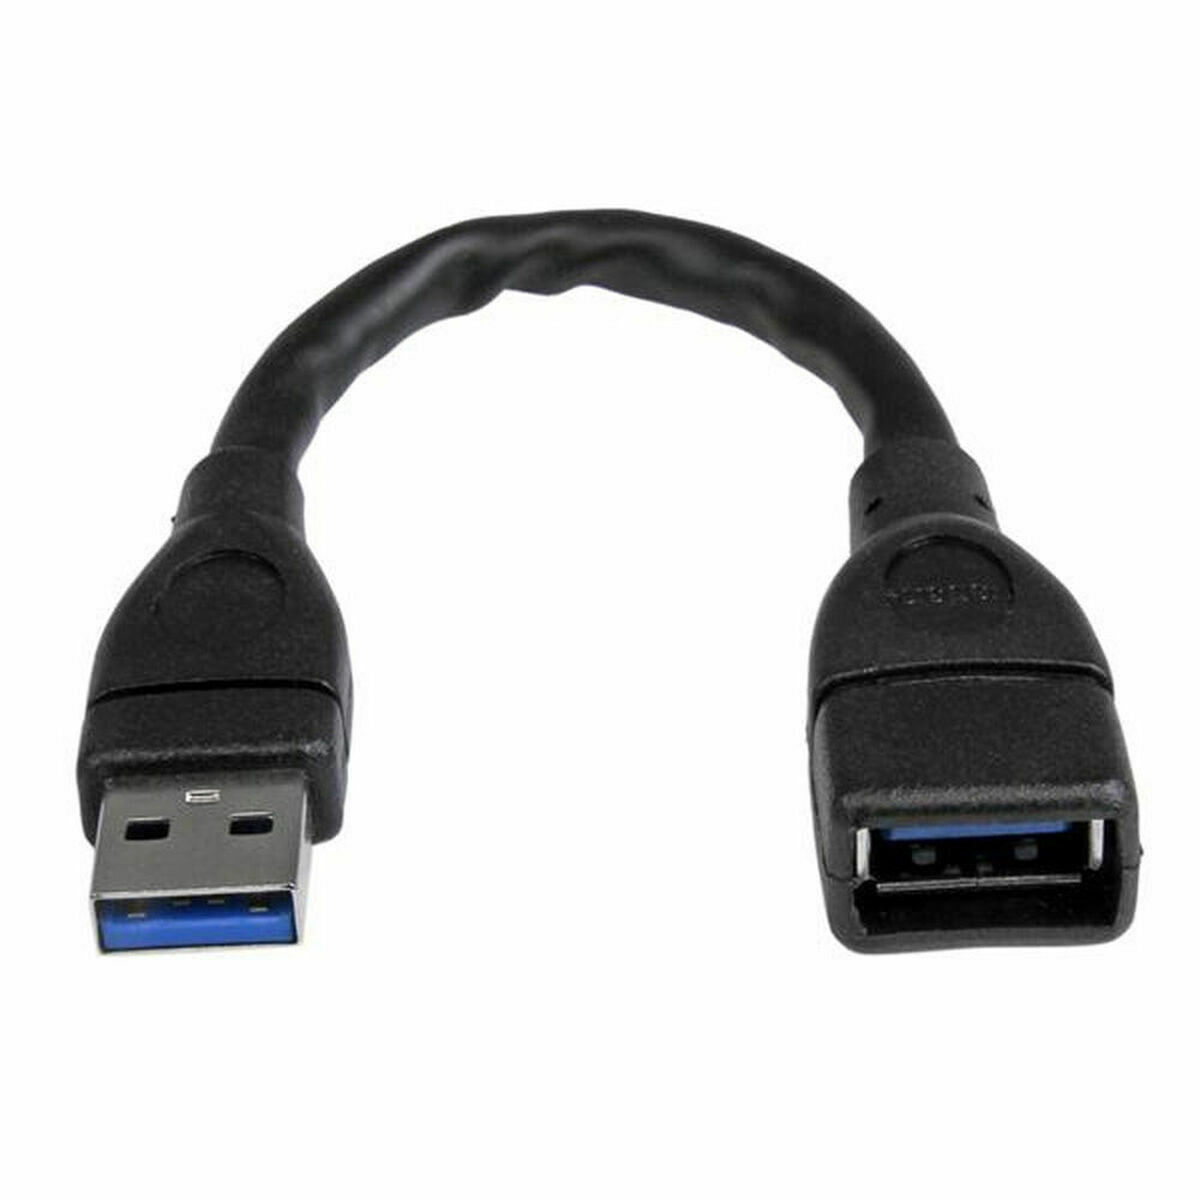 Câble USB Startech USB3EXT6INBK         Noir